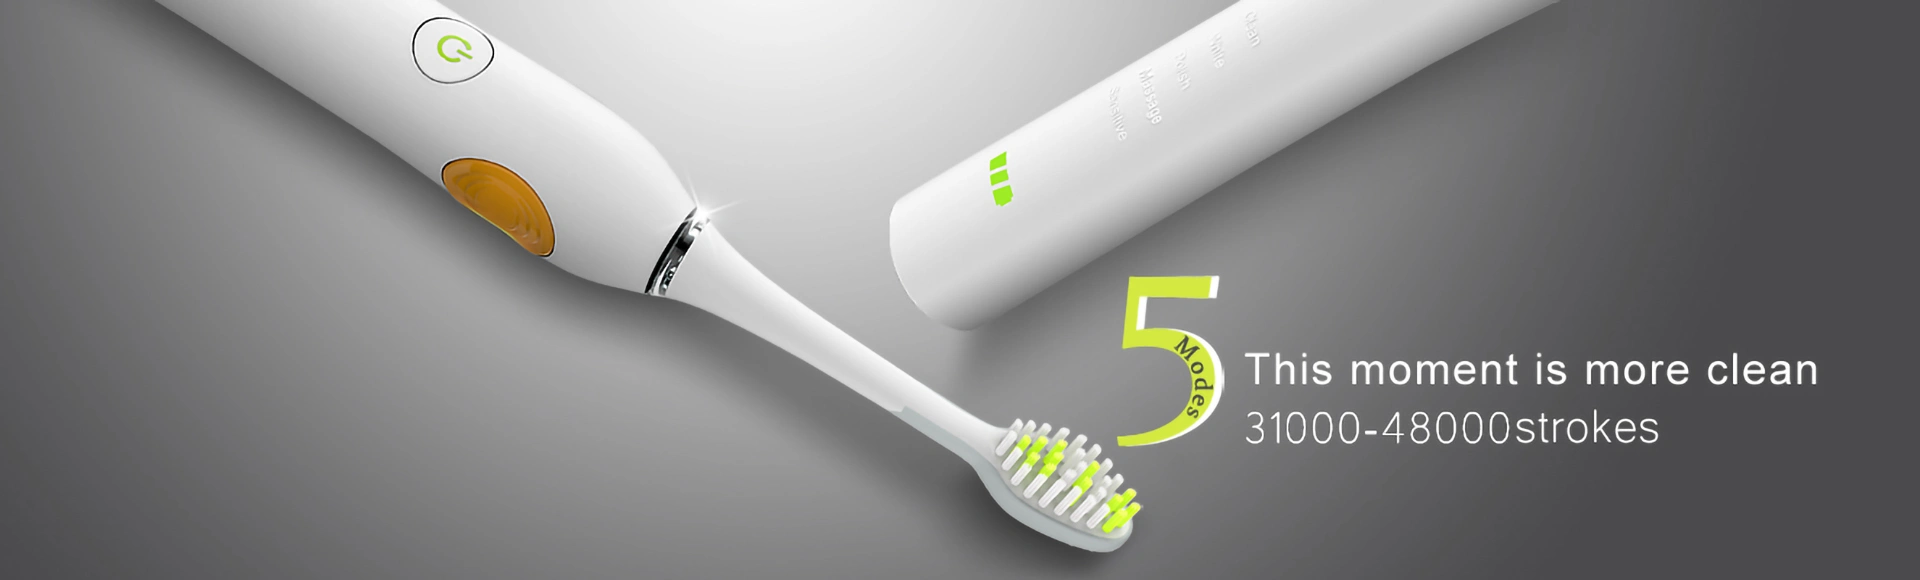 Cepillo dental eléctrico